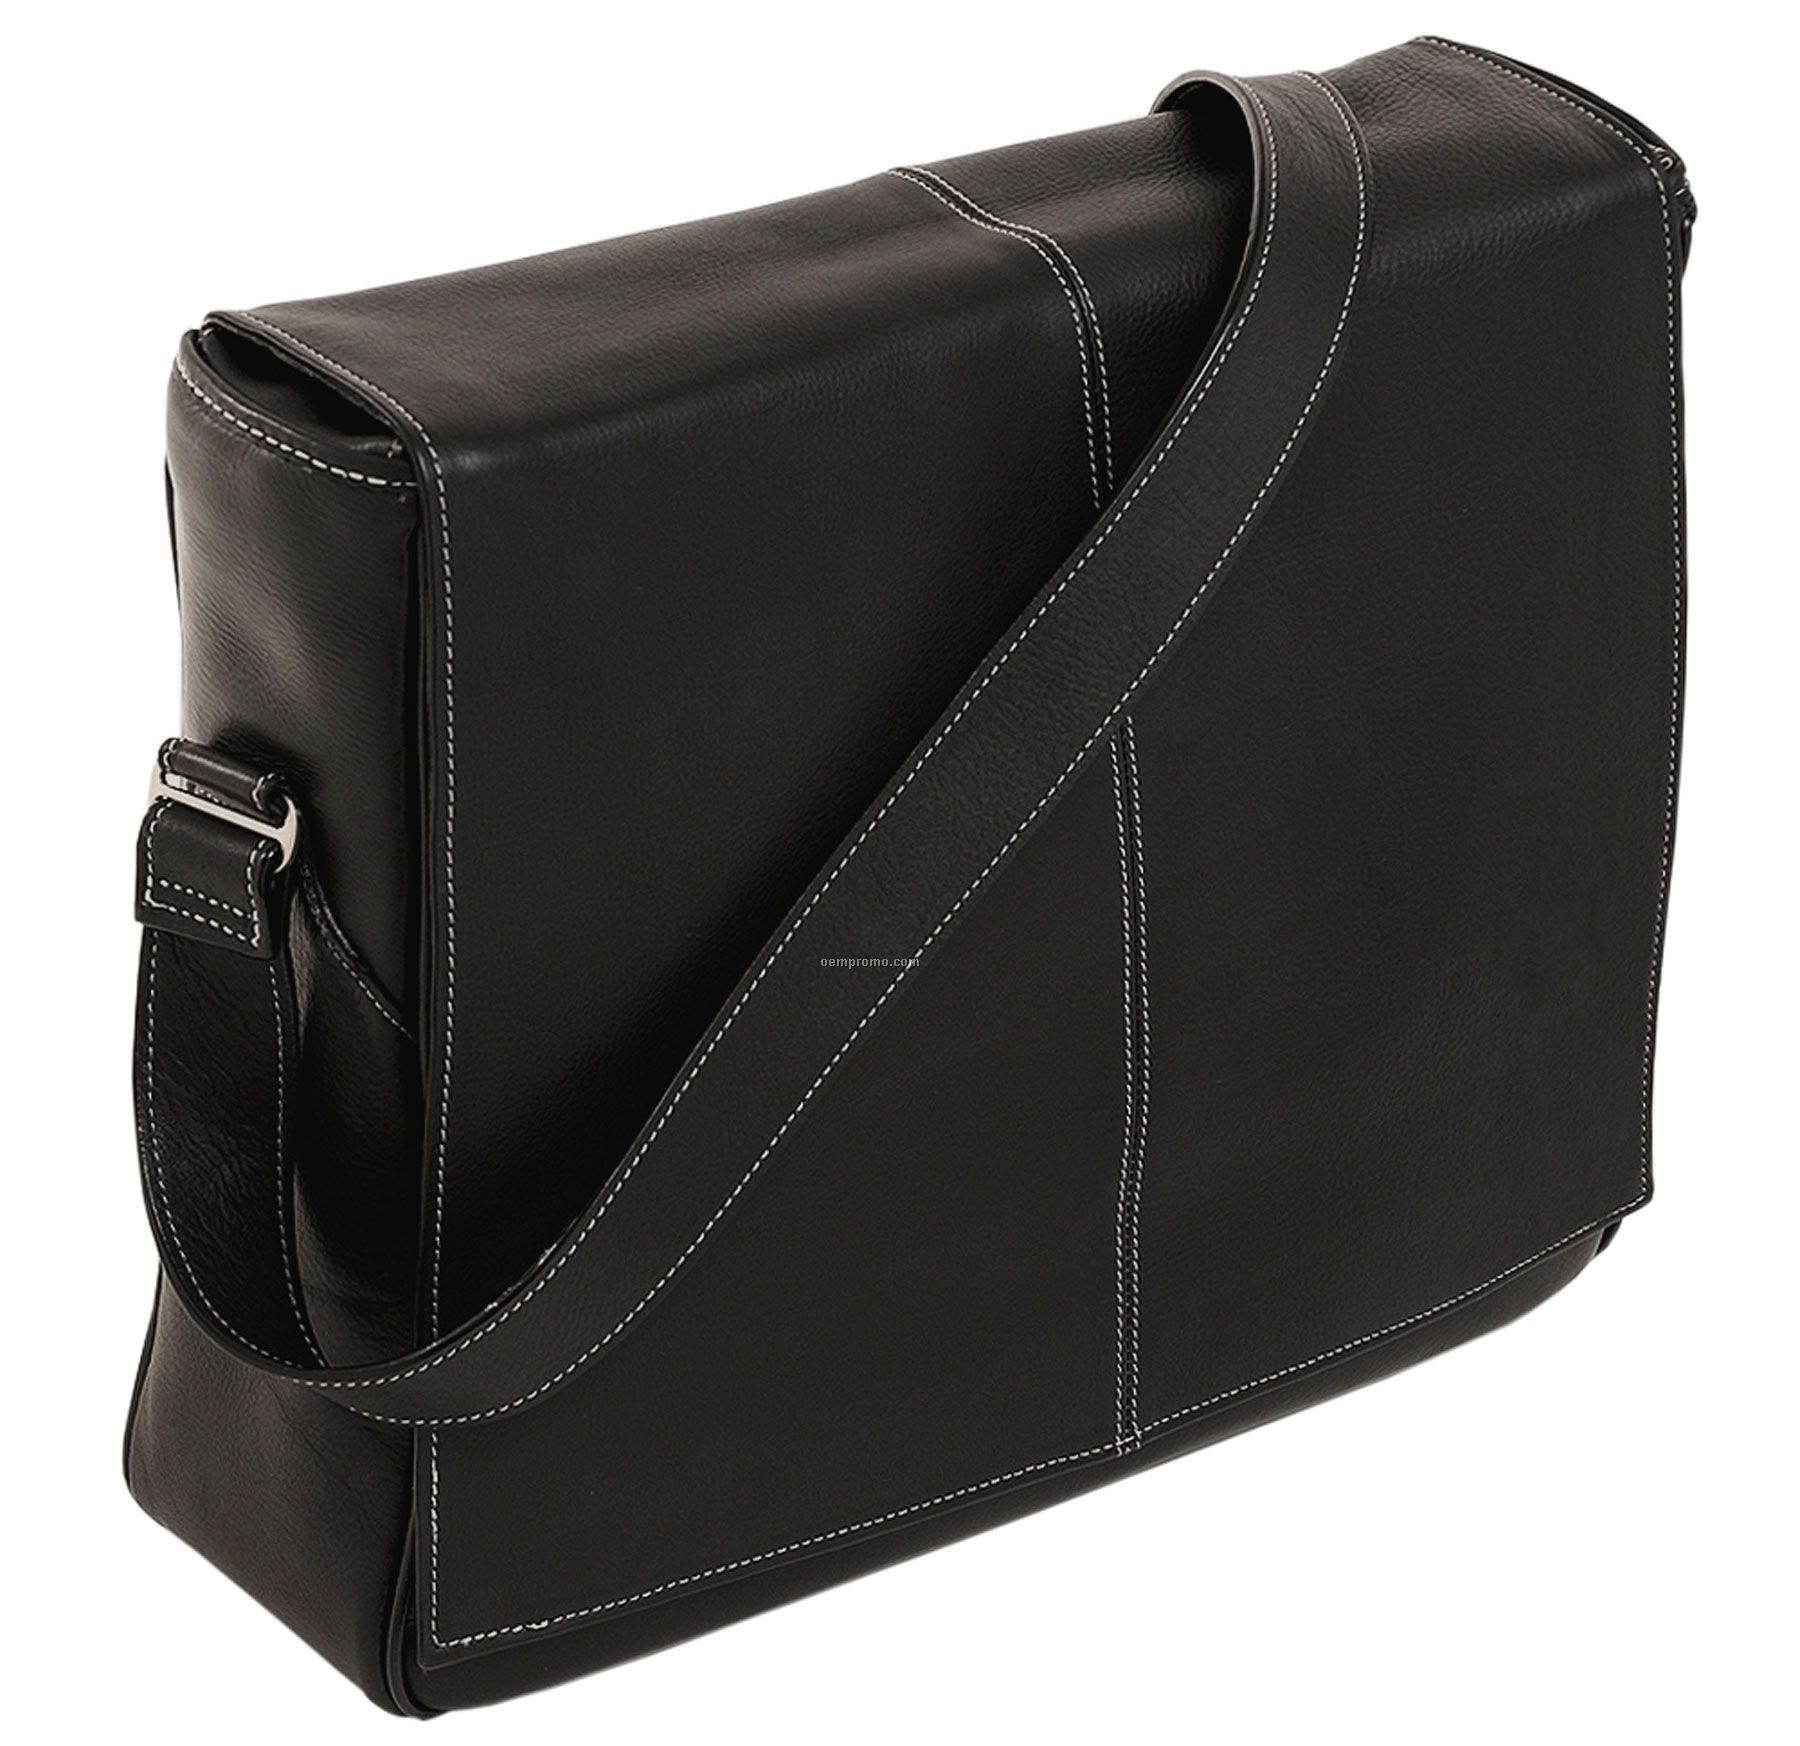 San Francesco Leather Messenger Bag - Black